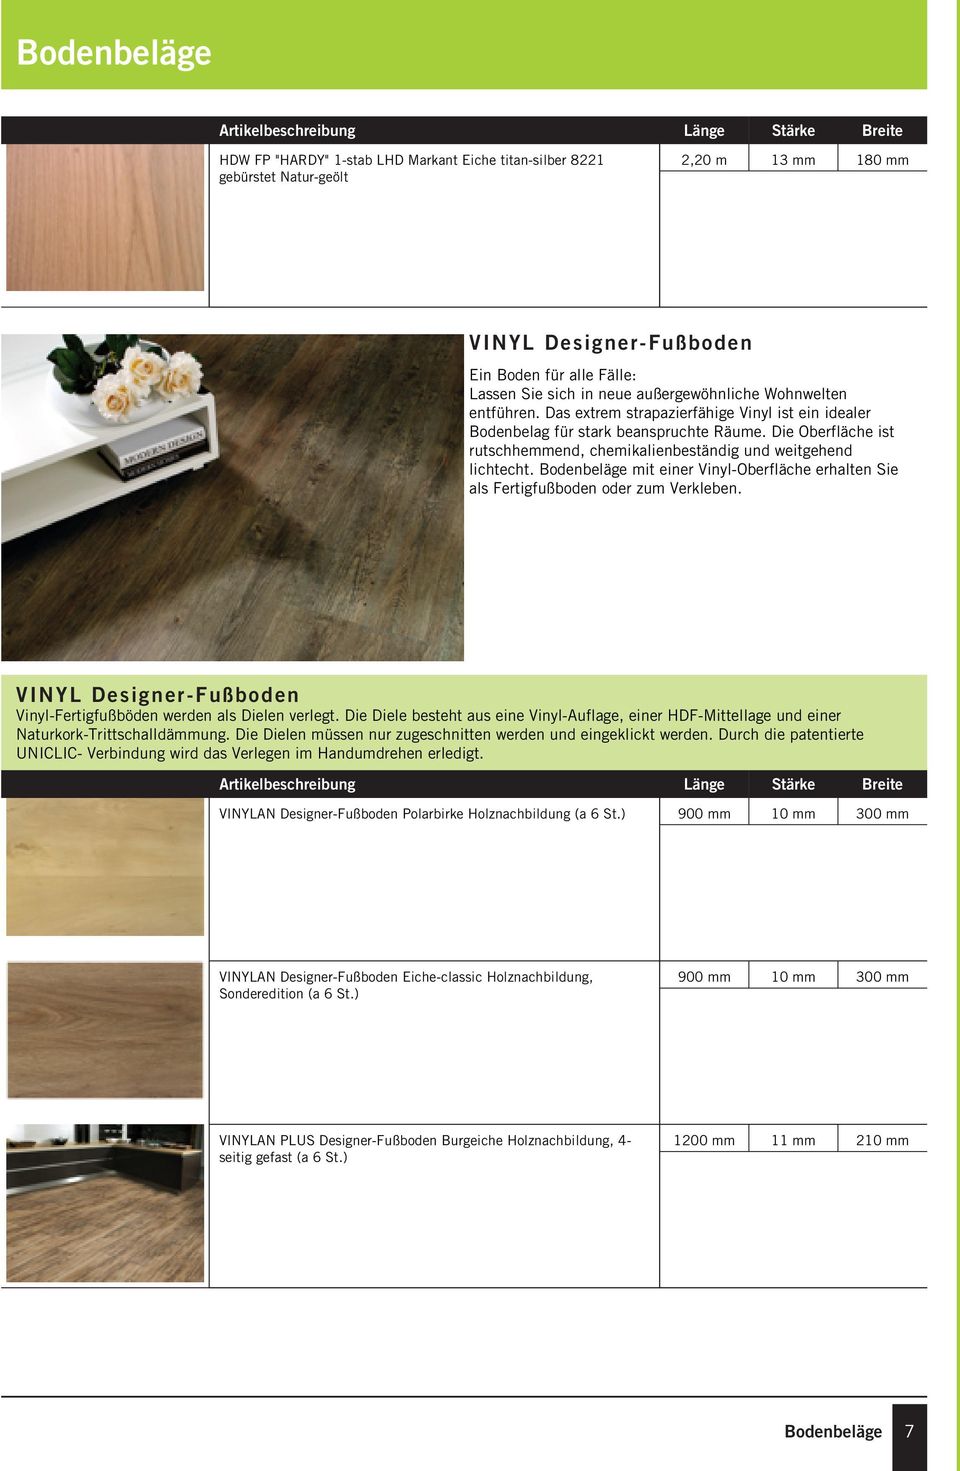 Bodenbeläge mit einer Vinyl-Oberfläche erhalten Sie als Fertigfußboden oder zum Verkleben. VINYL Designer-Fußboden Vinyl-Fertigfußböden werden als Dielen verlegt.